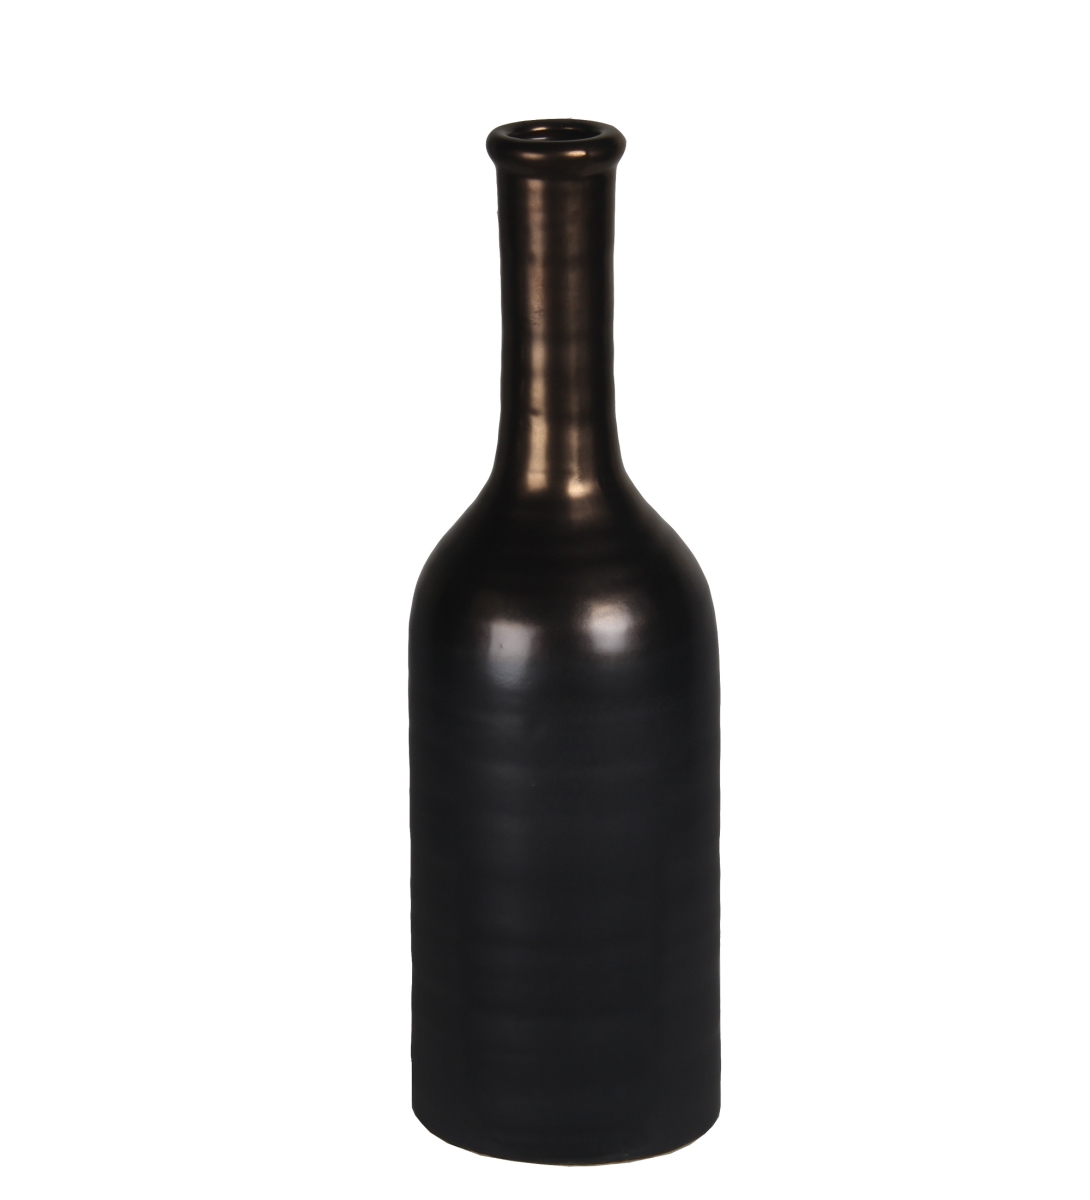 78197 6 X 6 X 17 In. Contemporary Copper & Ceramic Vase, Small